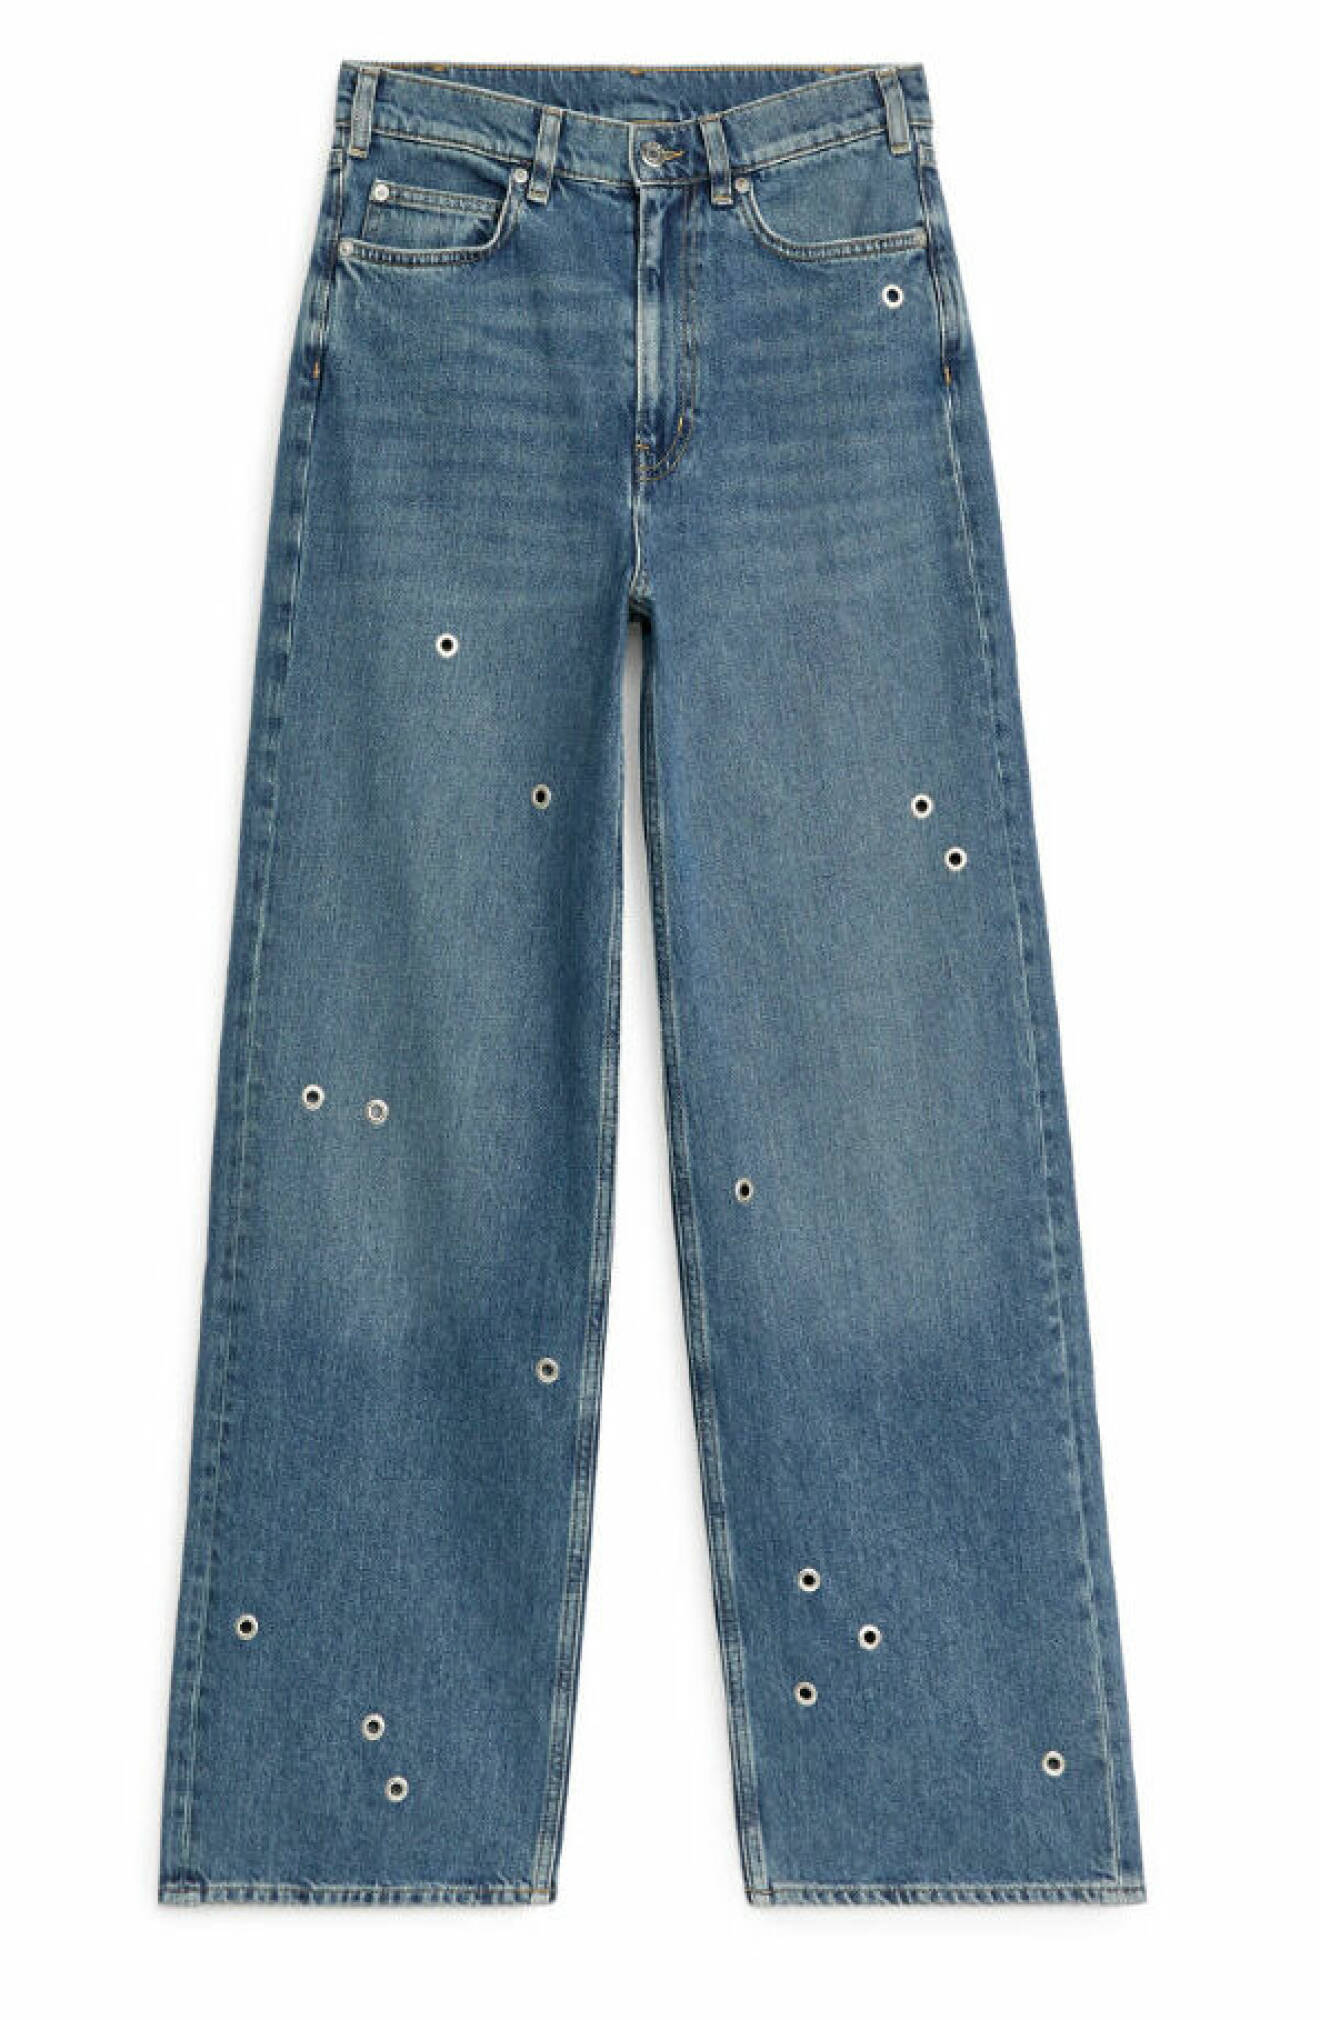 Snygga jeans i blå tvätt med dekorativa öljetter från Arket.